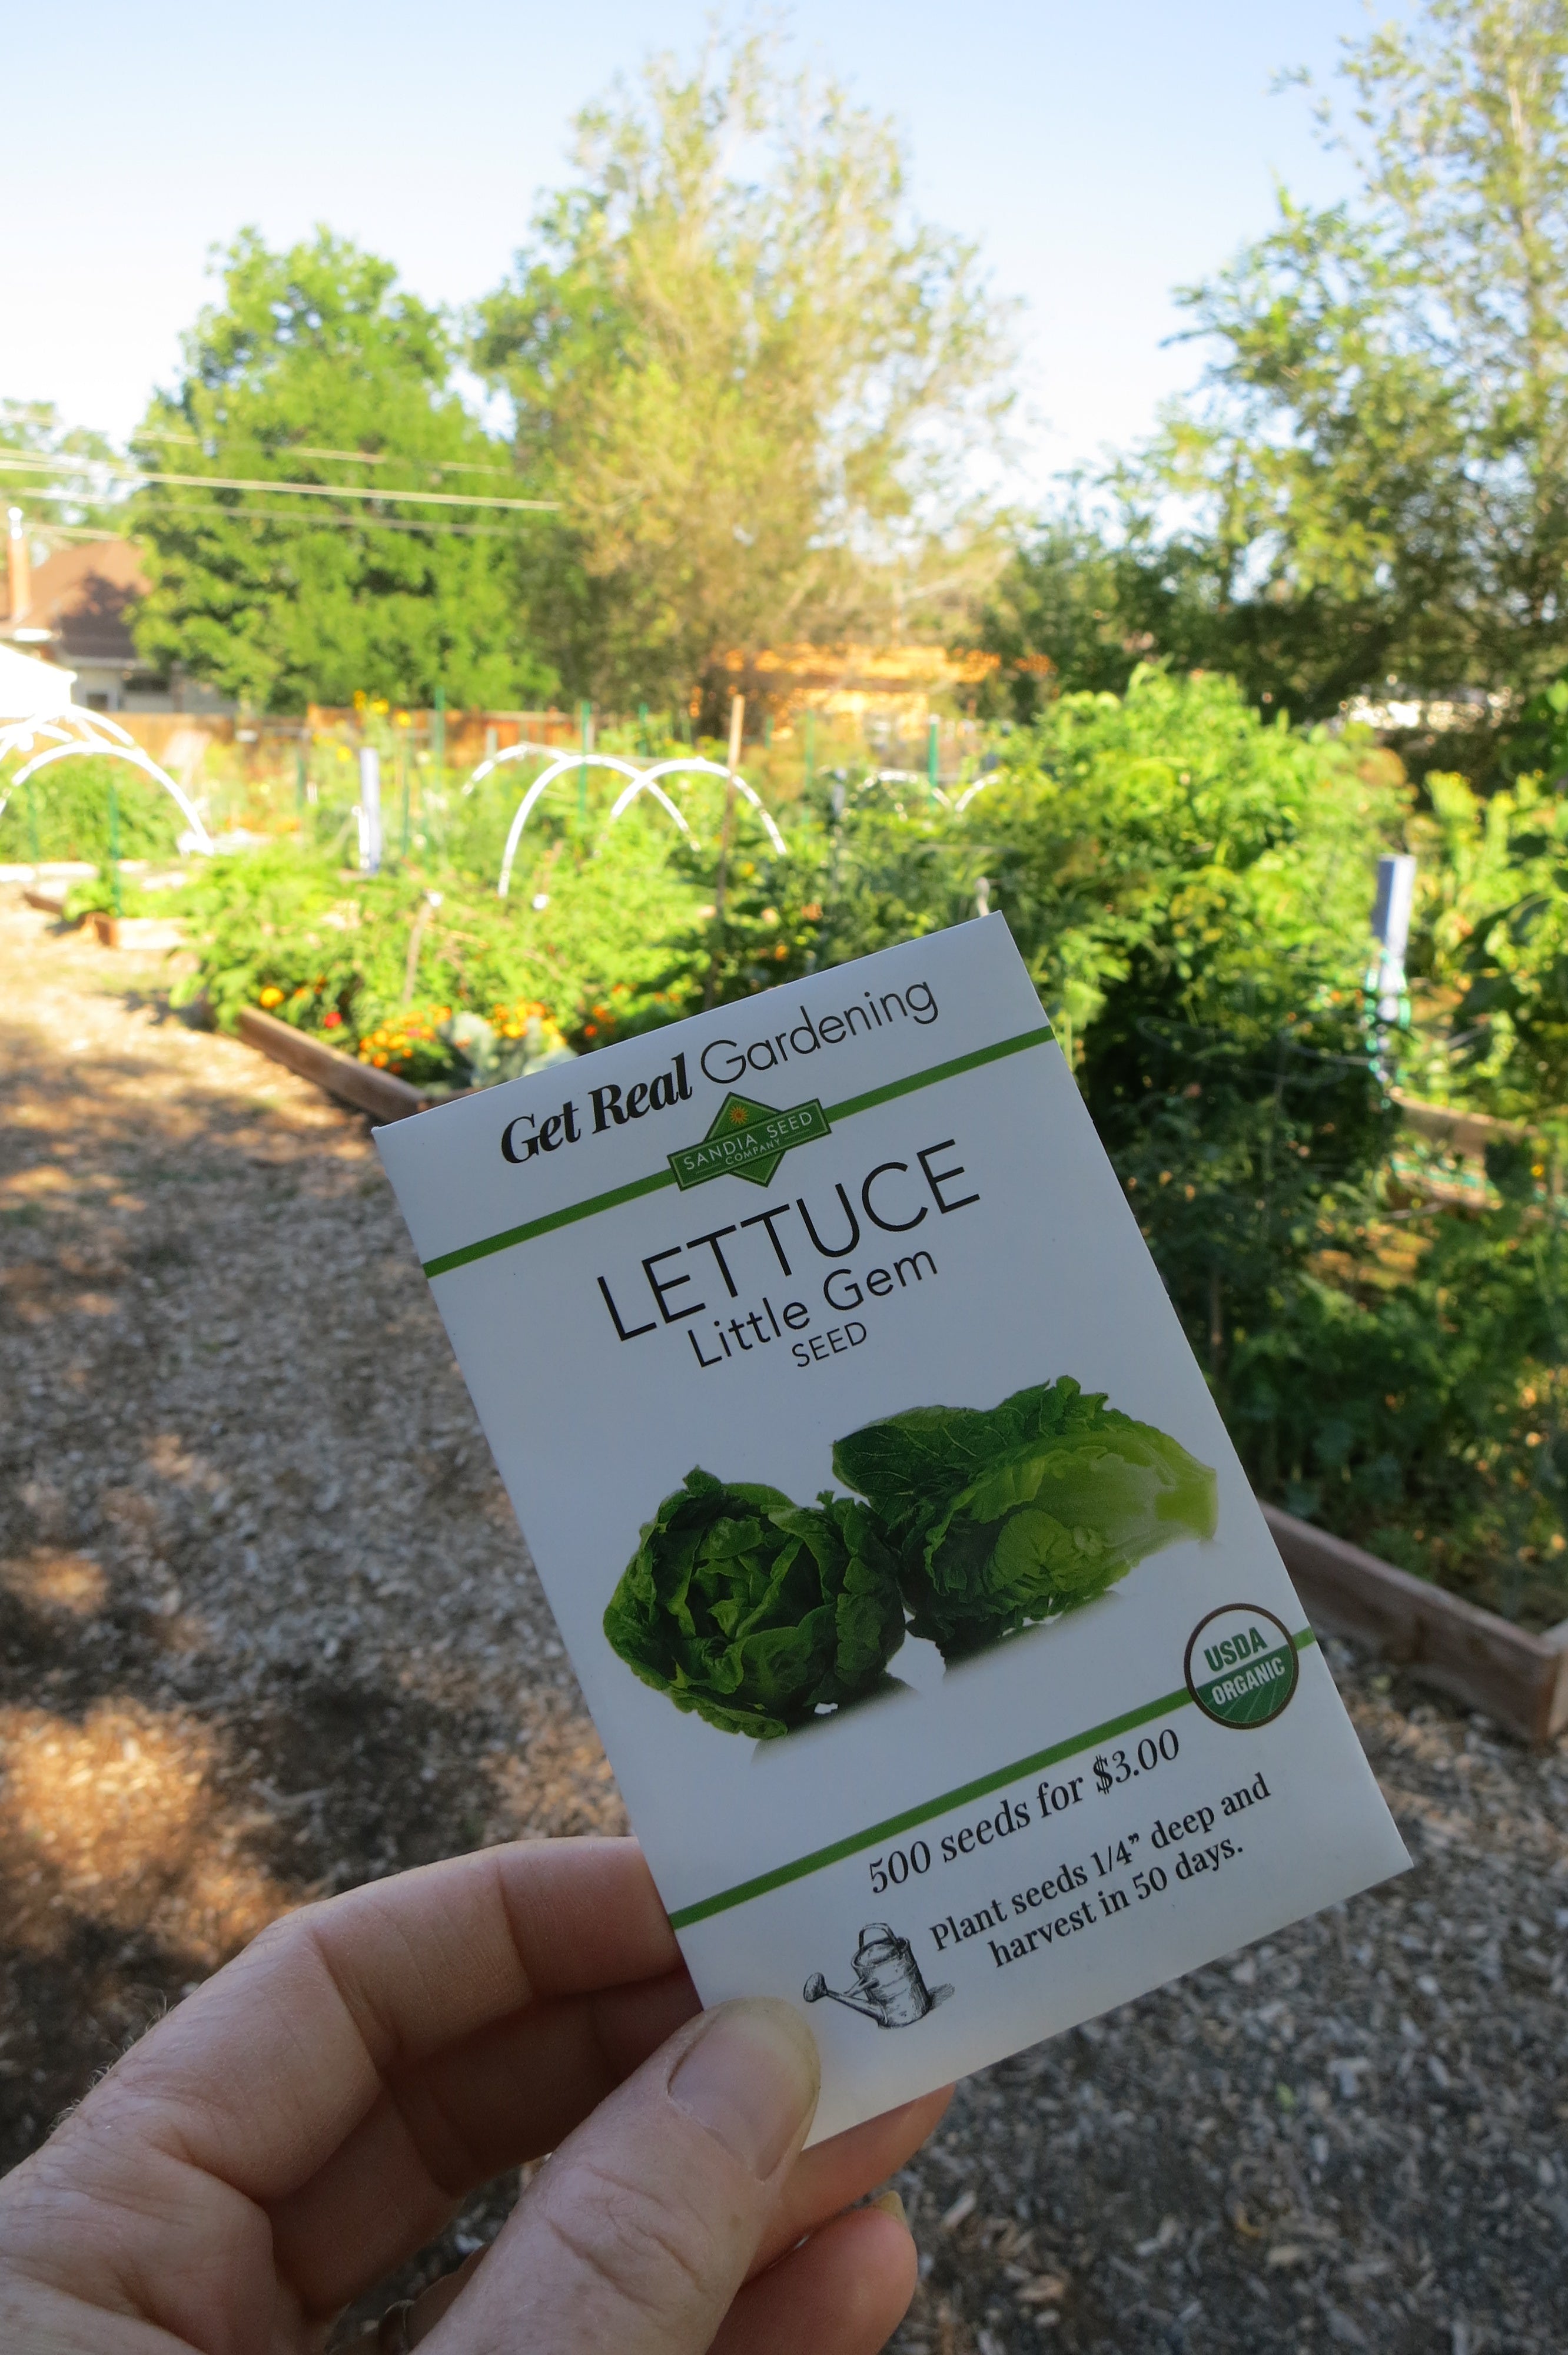 Little Gem Lettuce (50 Days)